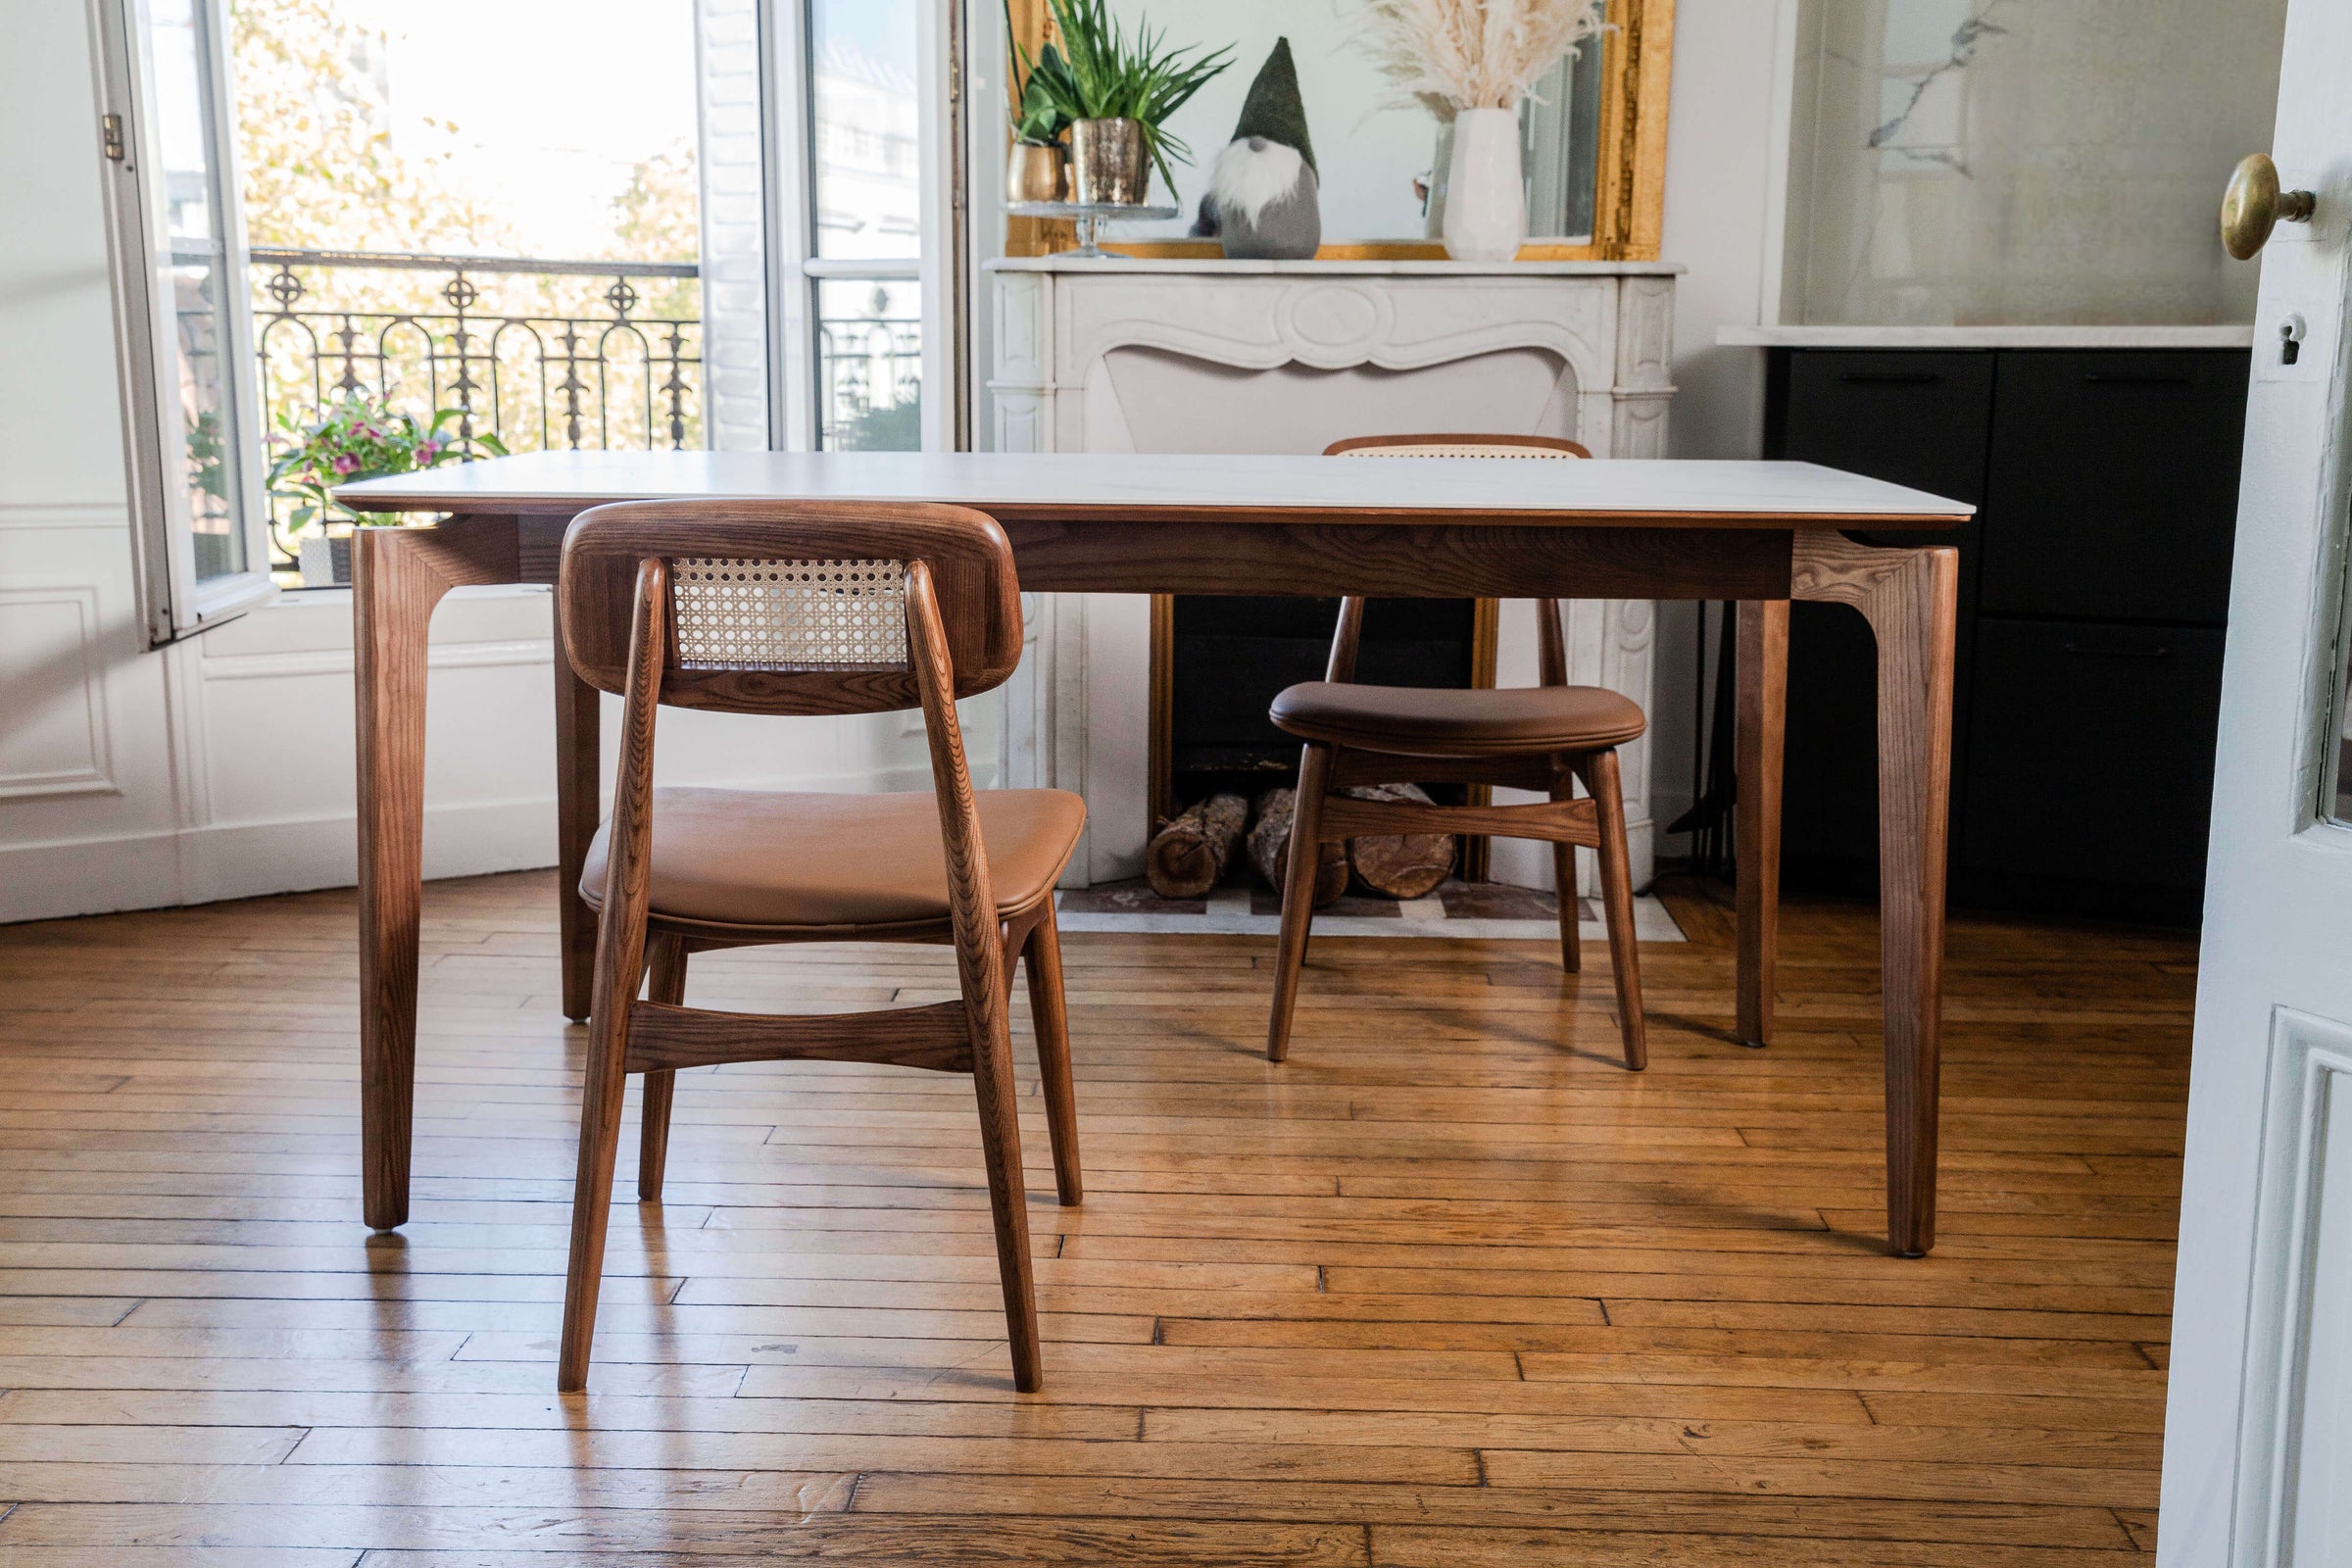 Fainko-paris-ile-de-france-meuble-design-bois-massif-chaise-fauteuil-table